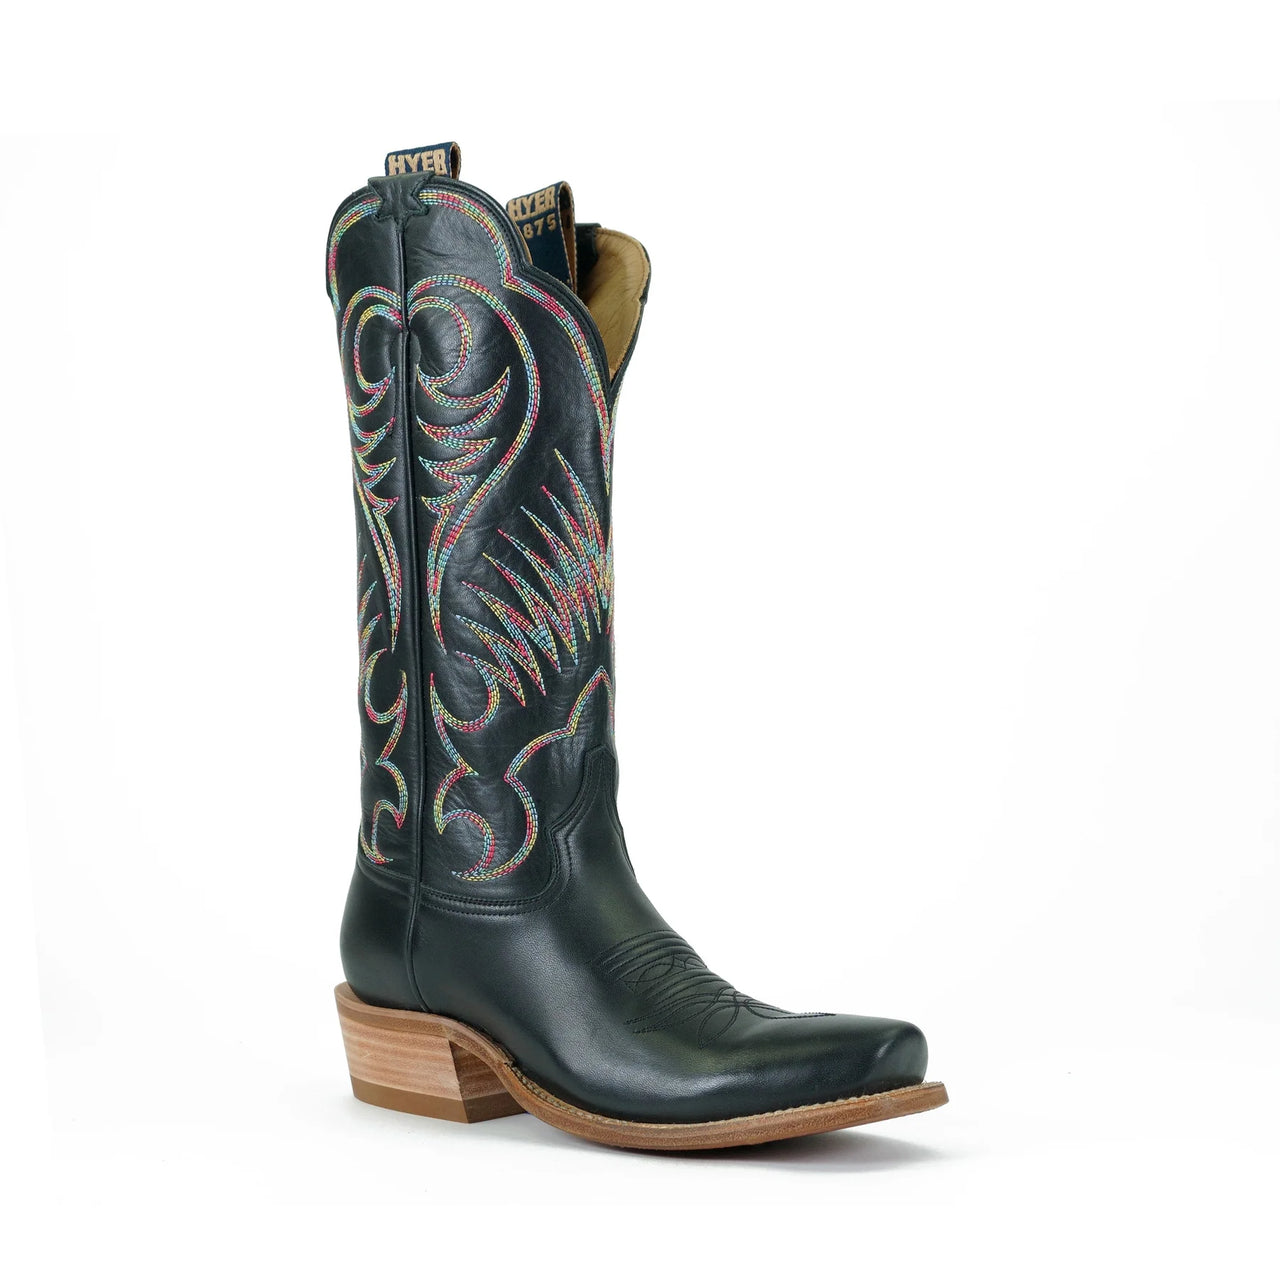 Hyer Women's Leawood Western Boots - Black Top-Shelf Cowhide